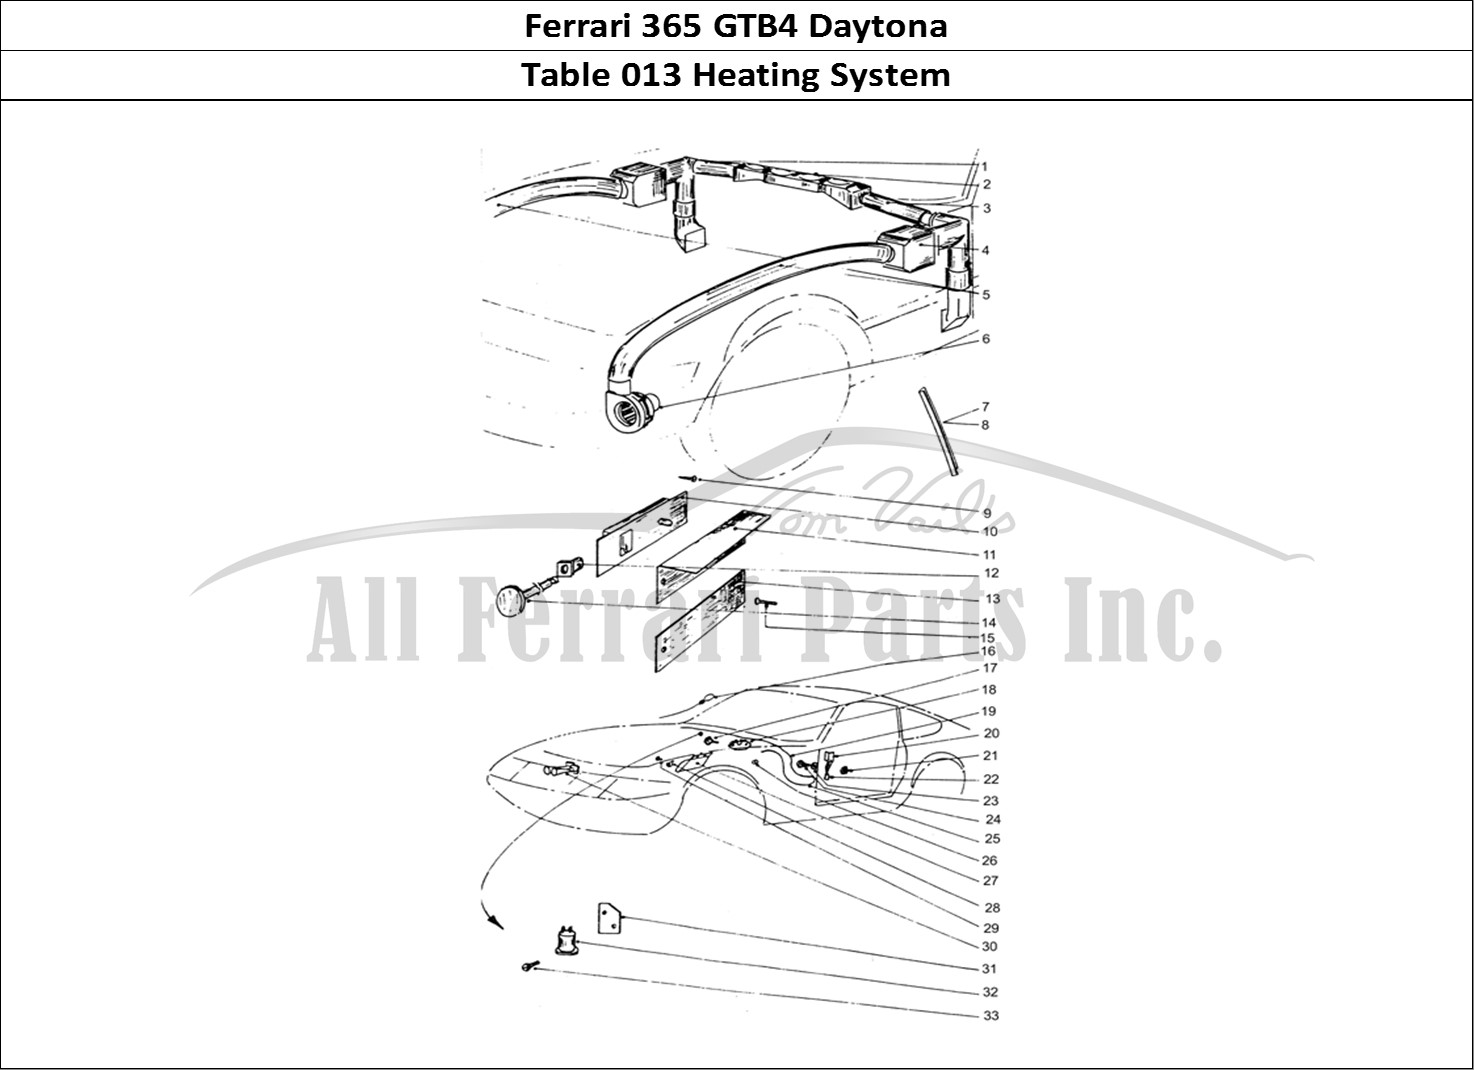 Ferrari Parts Ferrari 365 GTB4 Daytona (Coachwork) Page 013 Heater matrix & motors